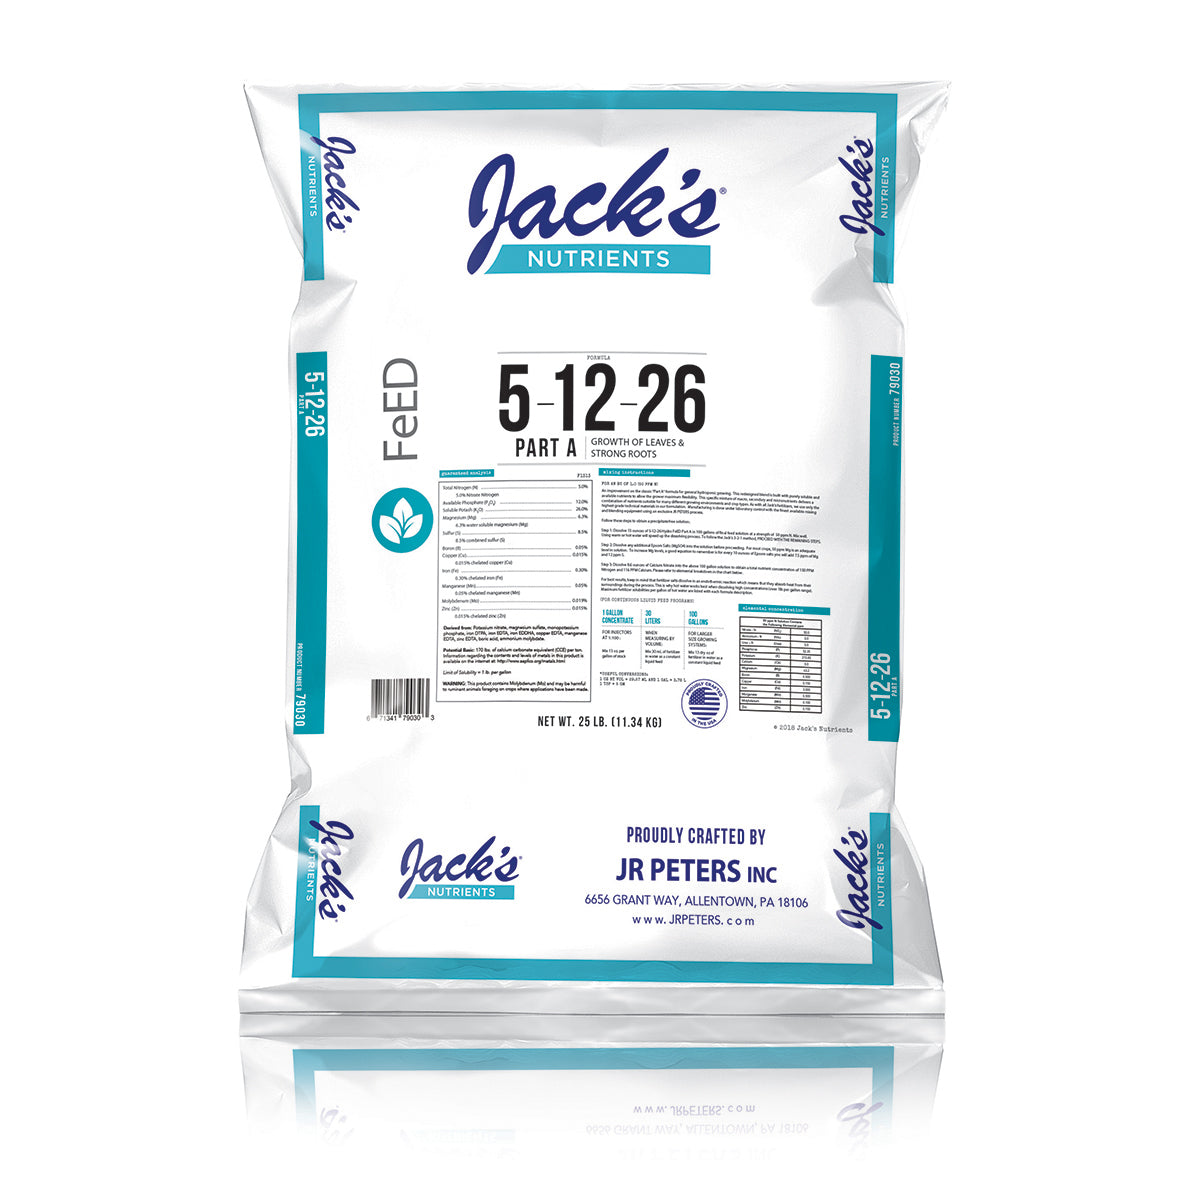 Product Secondary Image:Les nutriments de Jack (5-12-26) Partie A